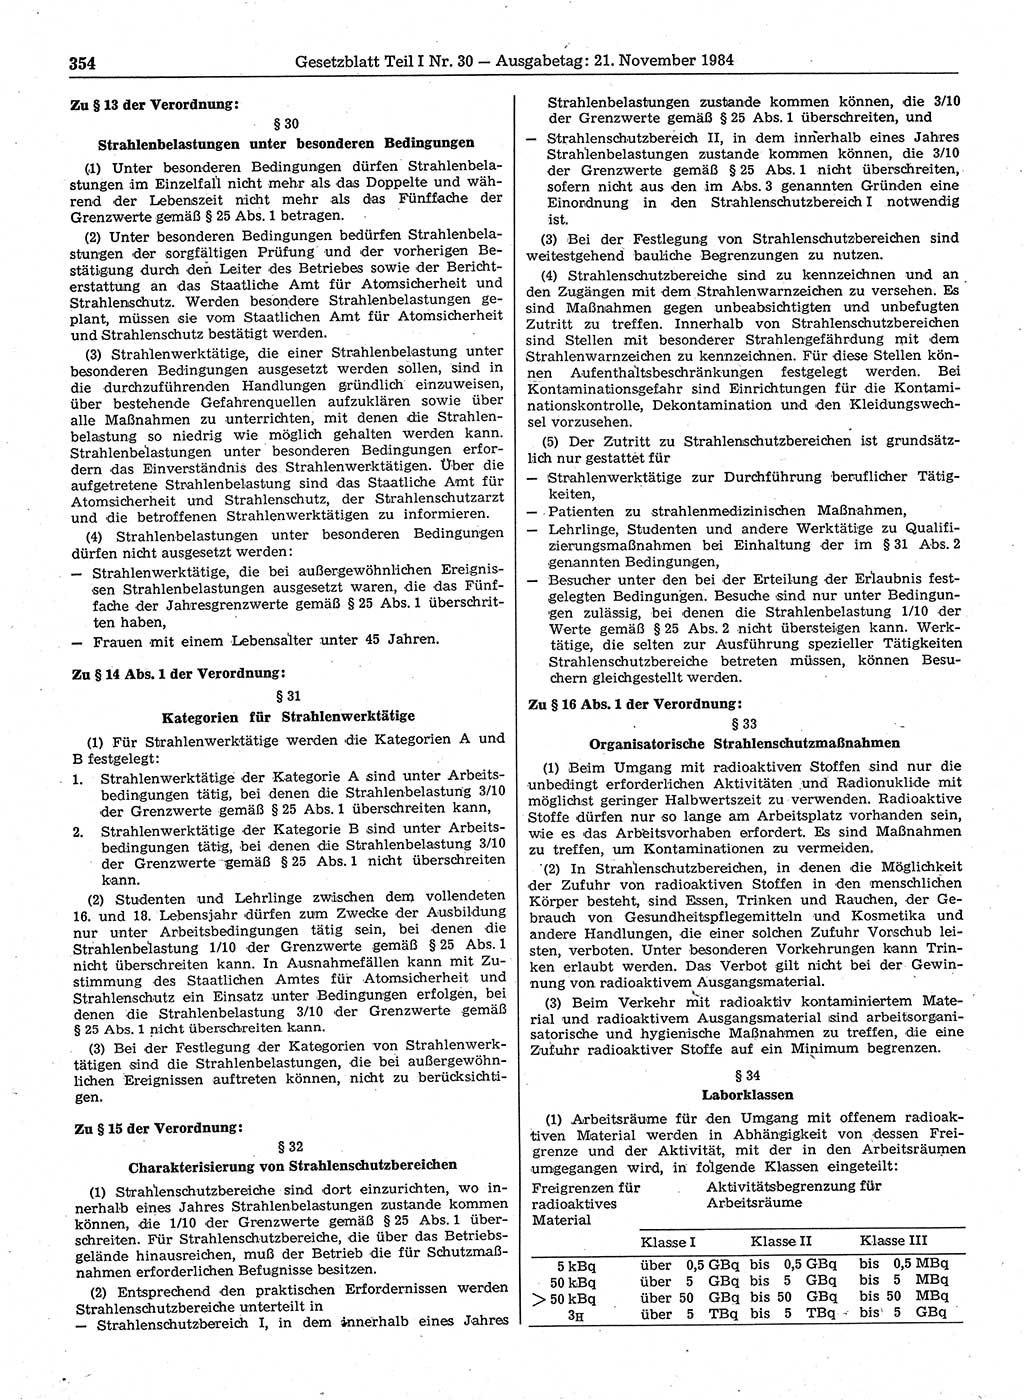 Gesetzblatt (GBl.) der Deutschen Demokratischen Republik (DDR) Teil Ⅰ 1984, Seite 354 (GBl. DDR Ⅰ 1984, S. 354)